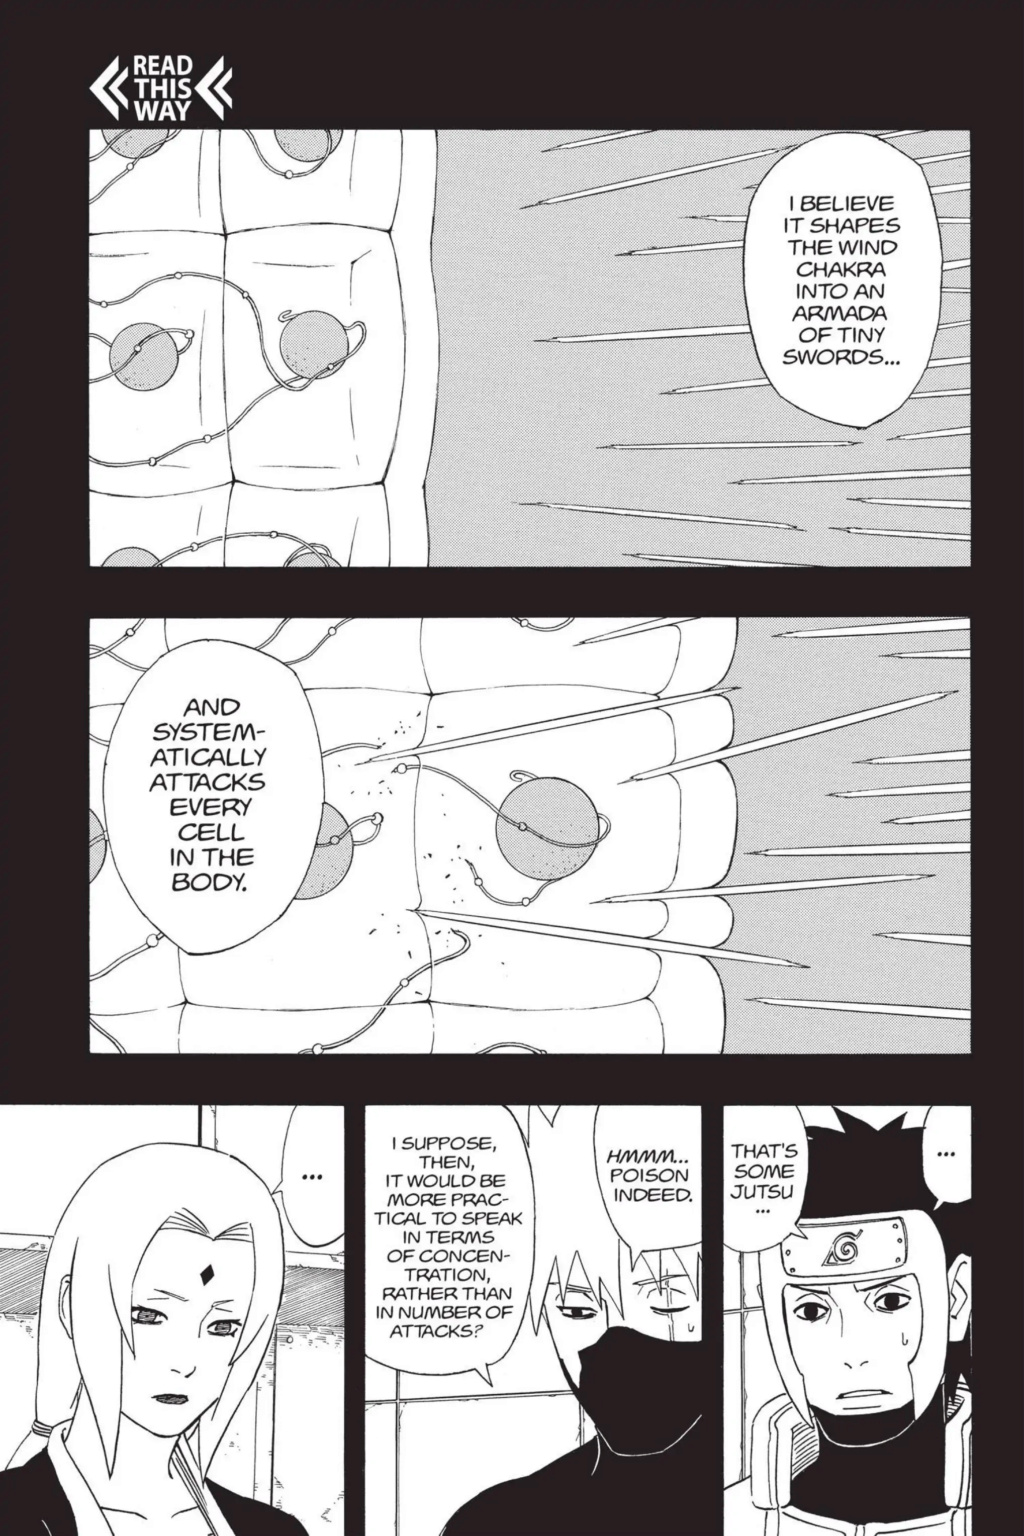 Naruto sem kurama vs tsunade  - Página 7 17589210